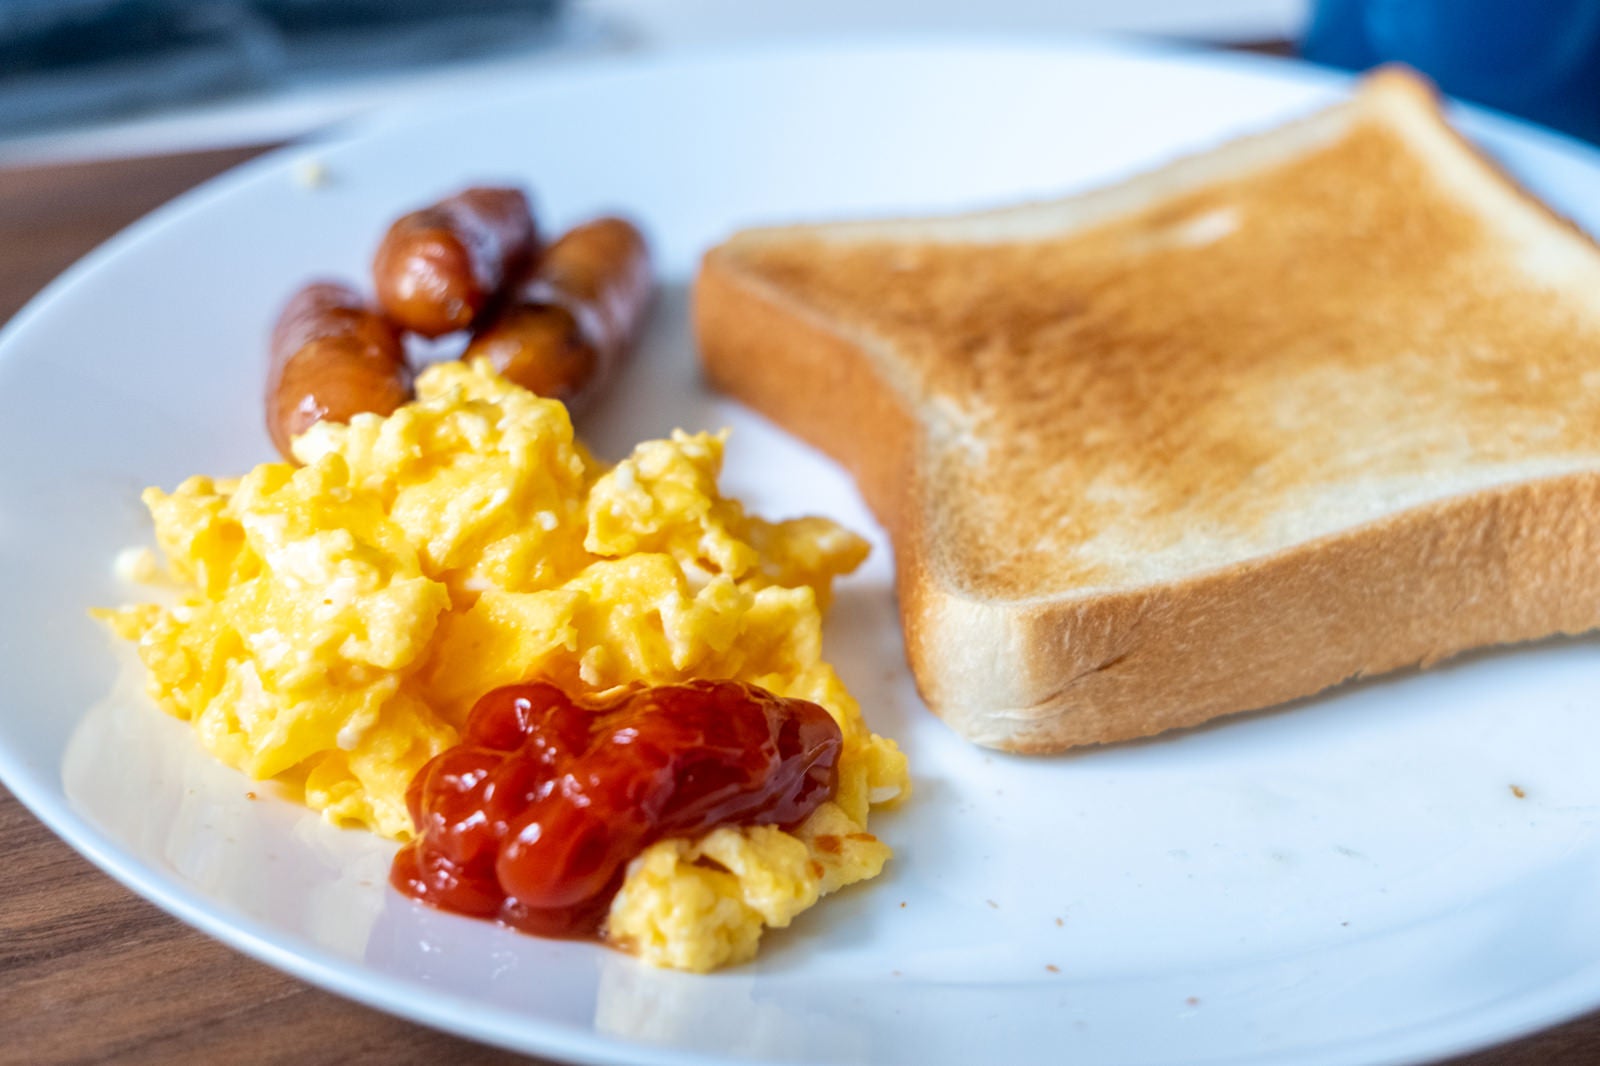 「朝食のスクランブルエッグとトースト」の写真